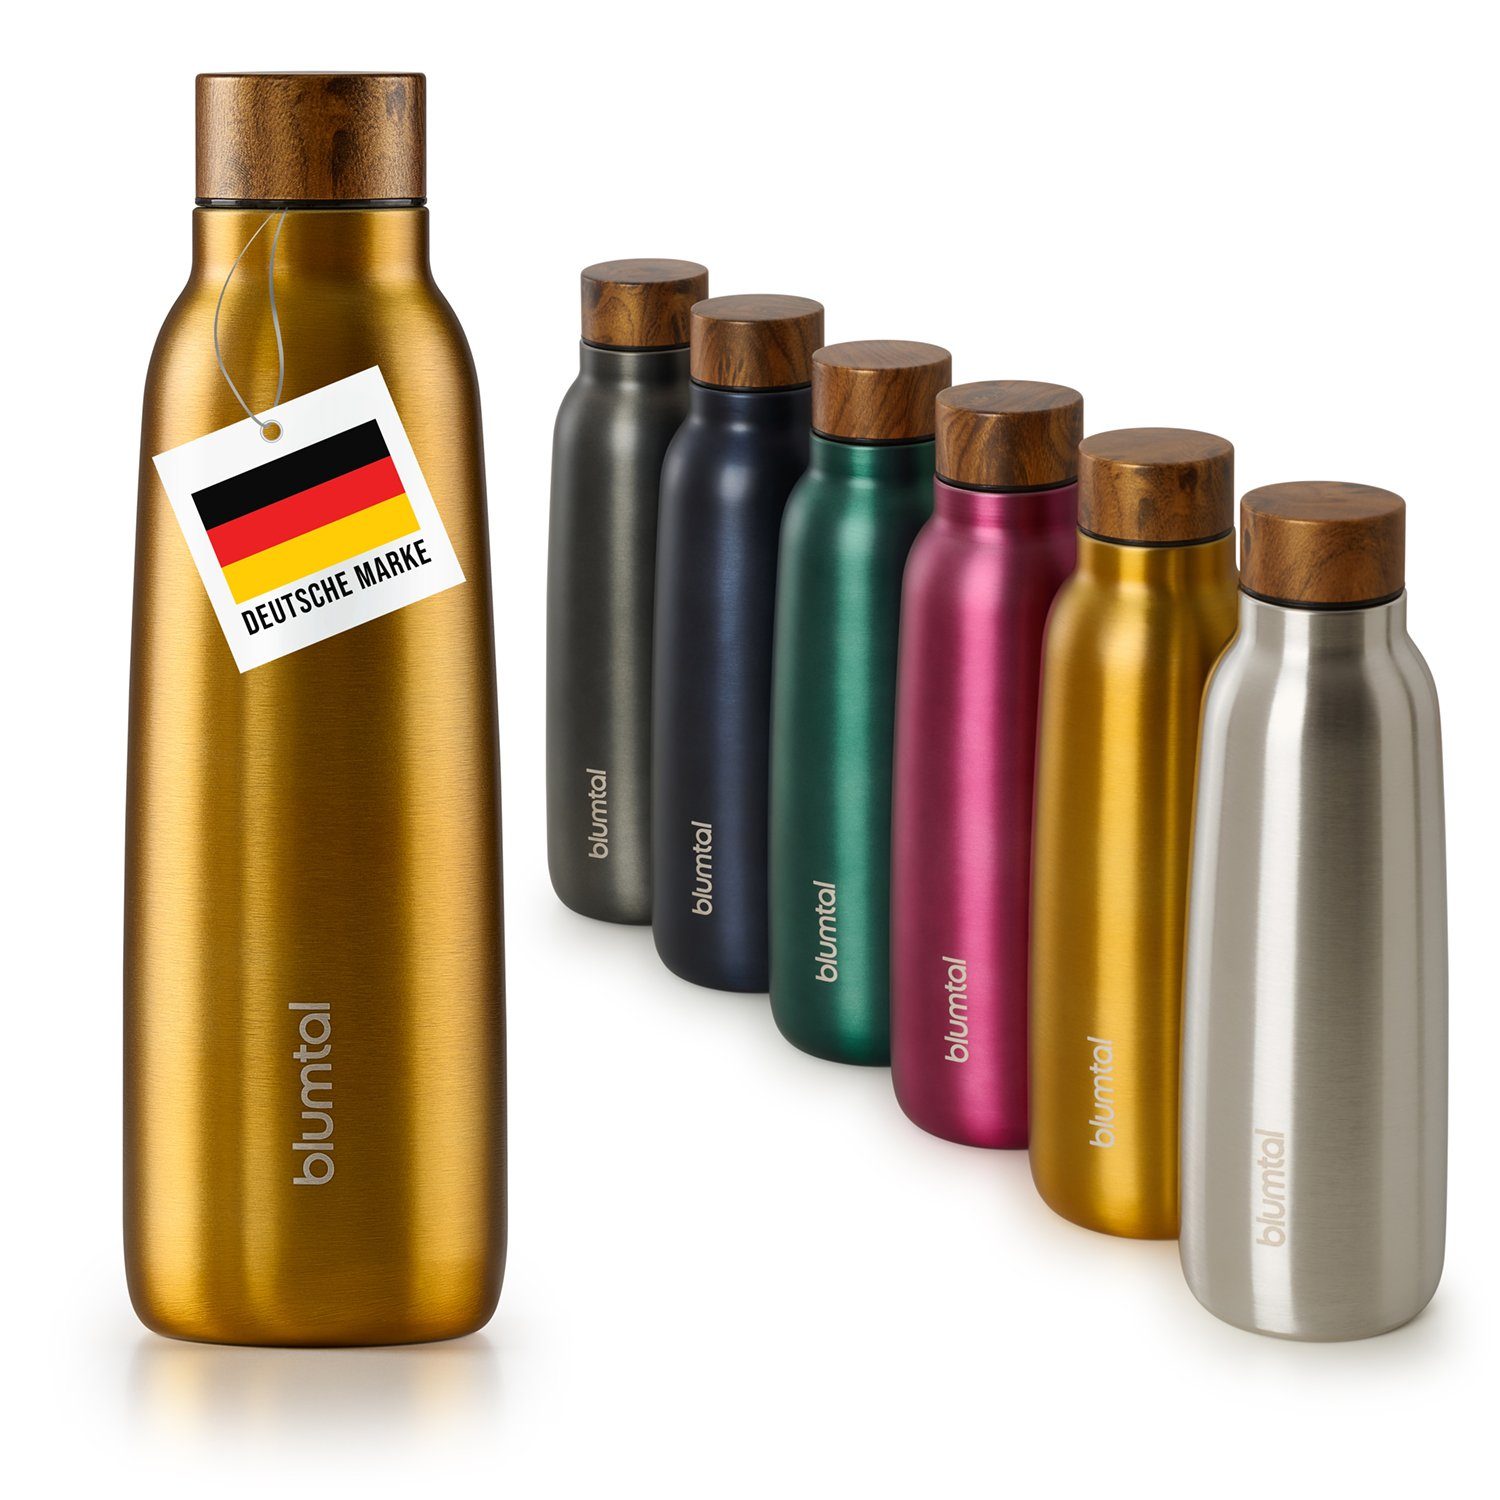 Blumtal Isolierflasche 500ml Trinkflasche Edelstahl Ray - auslaufsichere Isolierflasche, BPA-frei, hält 8h heiß/24h kalt Spicy Mustard - Gelb